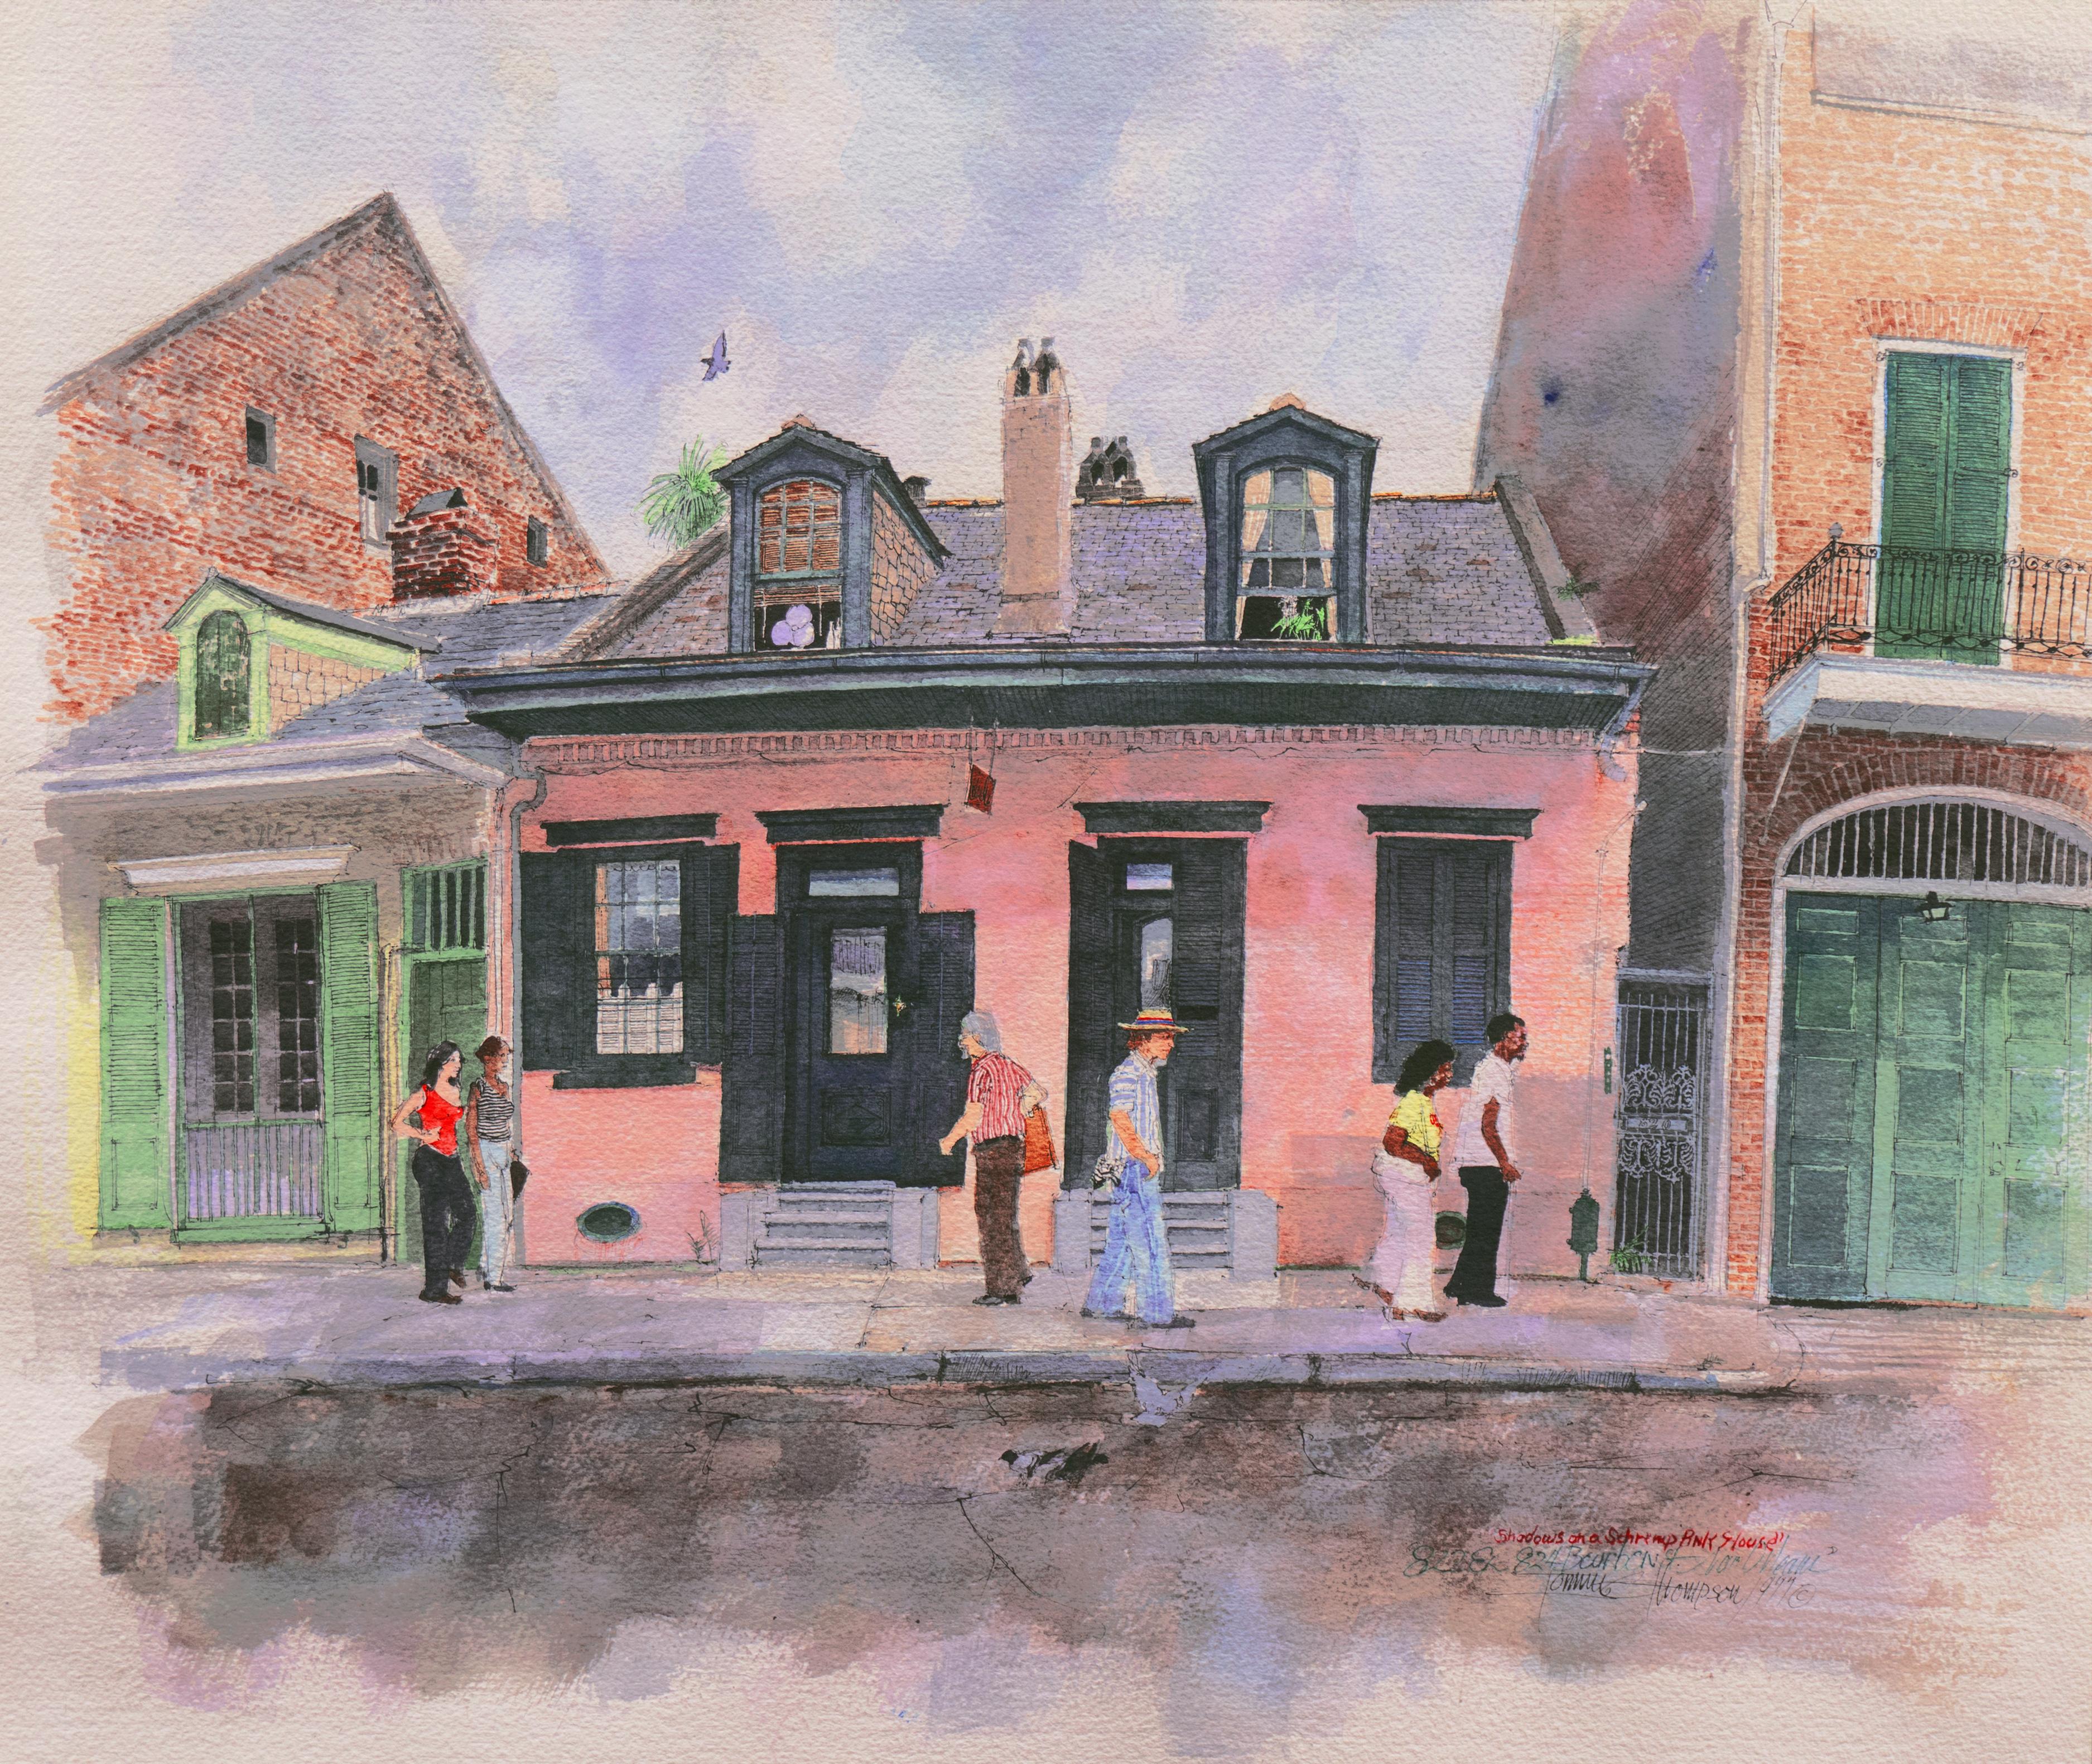 „Shadows on a Shrimp Pink House“, Bourbon Street, New Orleans Französisches Viertel